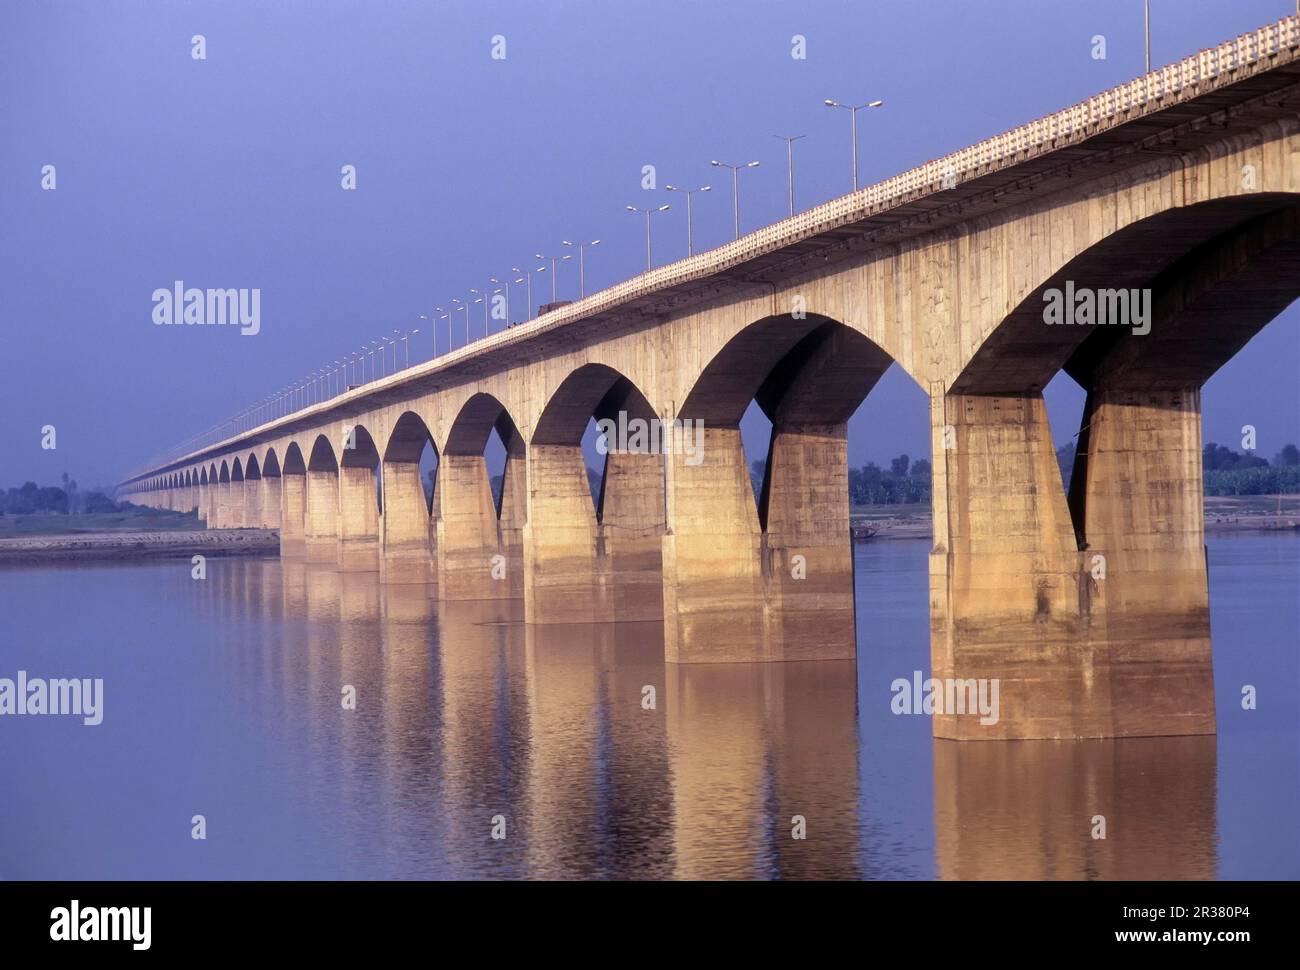 5375 Meter langer Mahatma Gandhi Setu, die Brücke über die Ganga in Patna, Bihar, die längste Flussbrücke Indiens Stockfoto